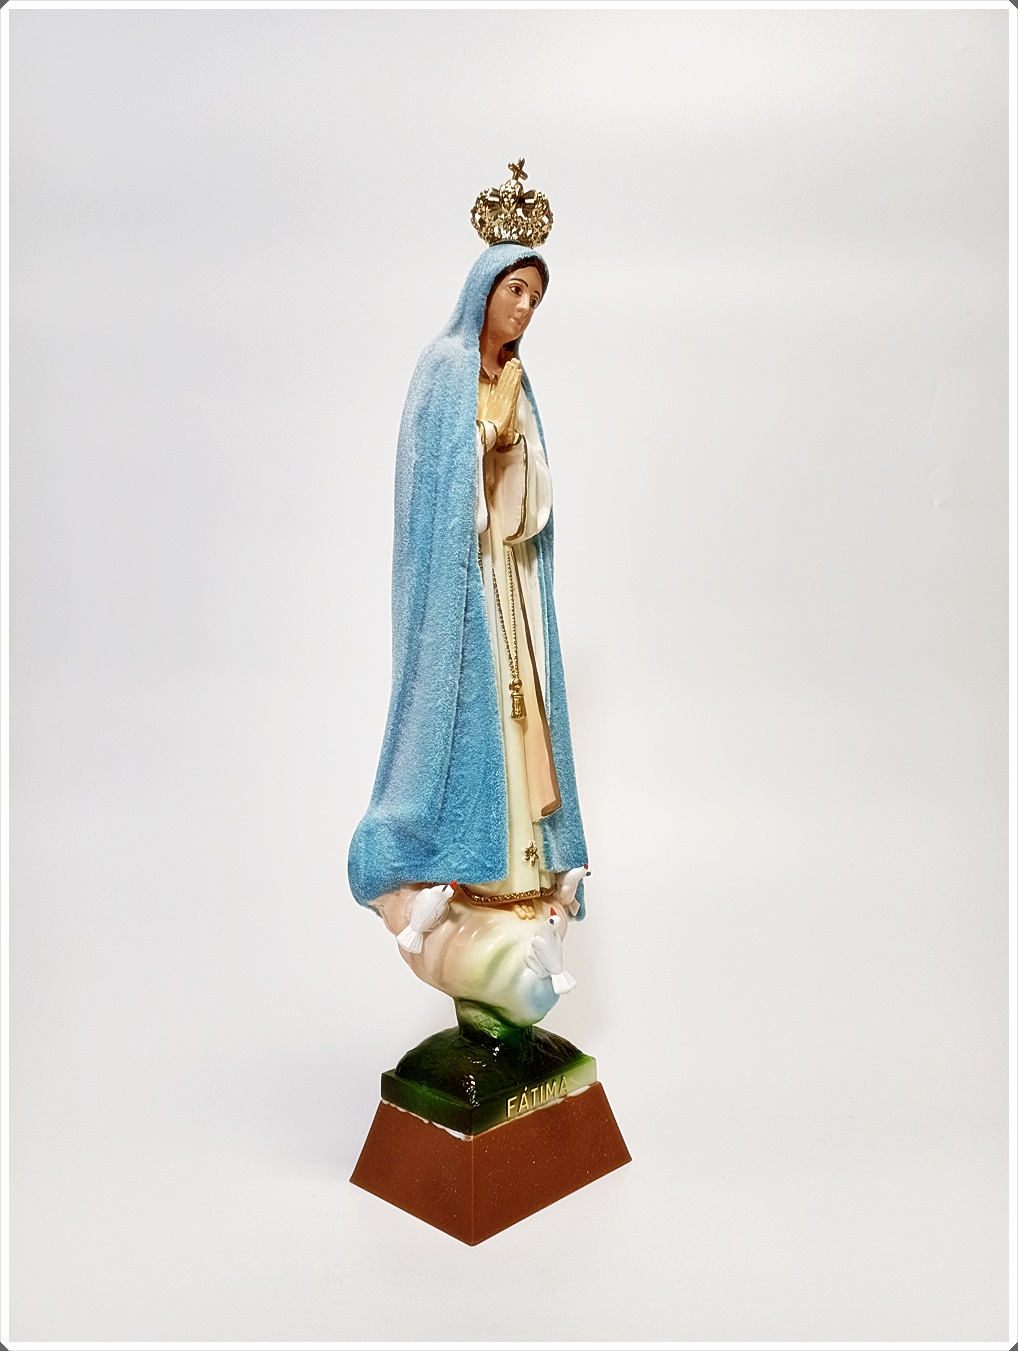 figurka Matki Boskiej Fatimskiej, figura Maryi, Fatima, figura Matki Bożej pogodynka,pogodynka, płaszczyk zmieniający kolor, Fatima